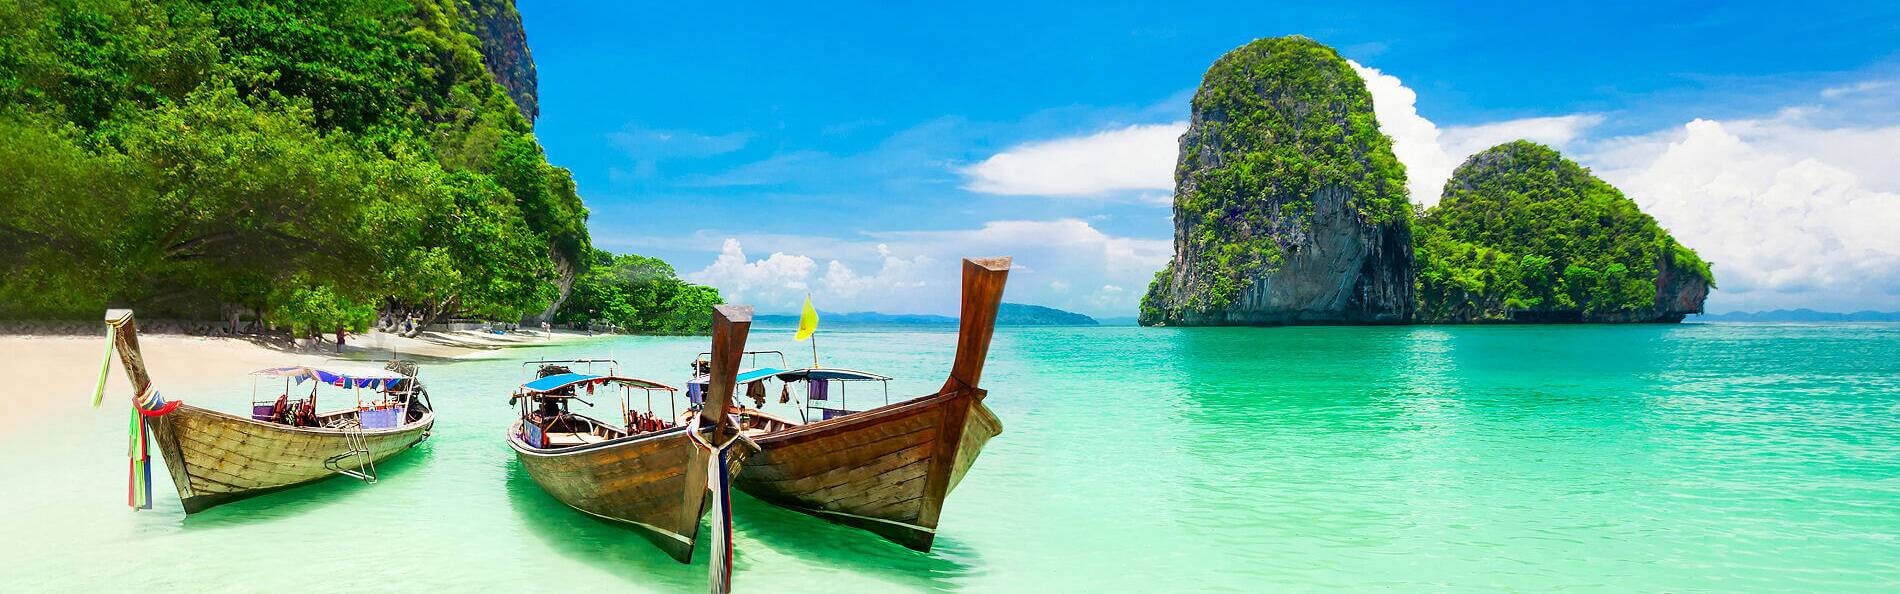 Ob Inselhopping, Kombireisen oder einfach nur am Strand relaxen. Wir stellen Ihnen individuell eine Reise zu den schönsten Inseln von Thailand zusammen.